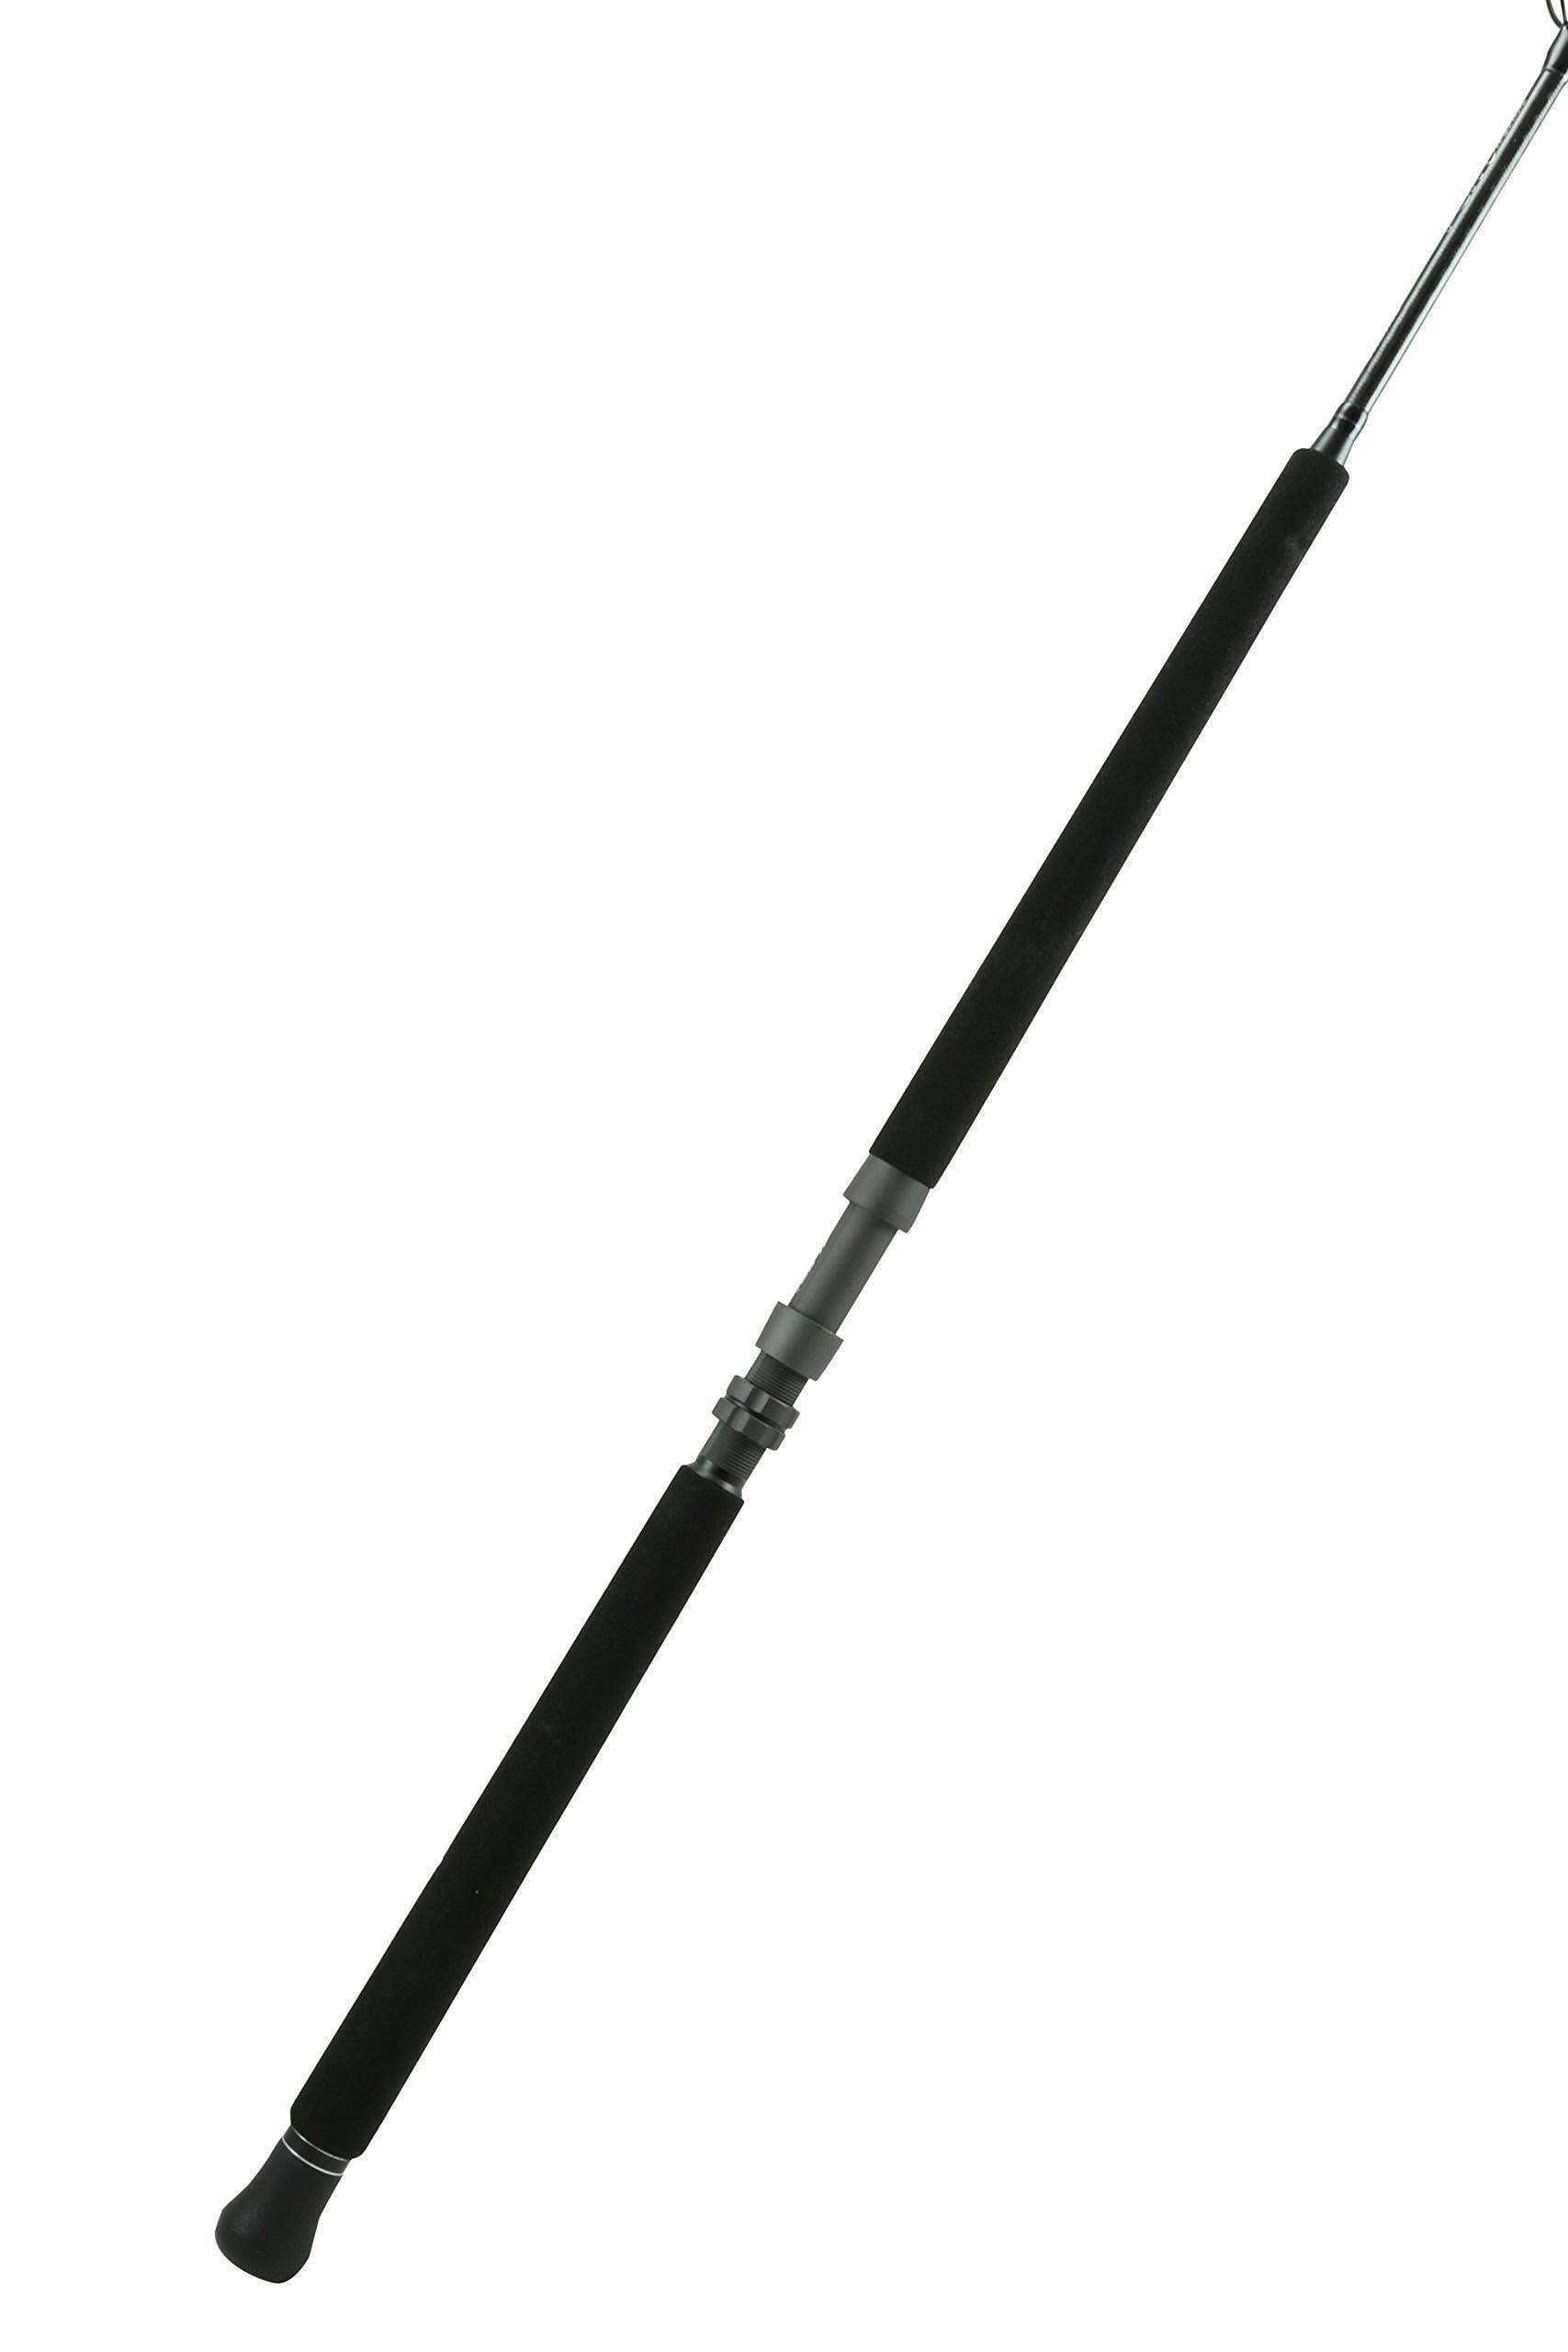 Okuma PCH Custom Casting Rod